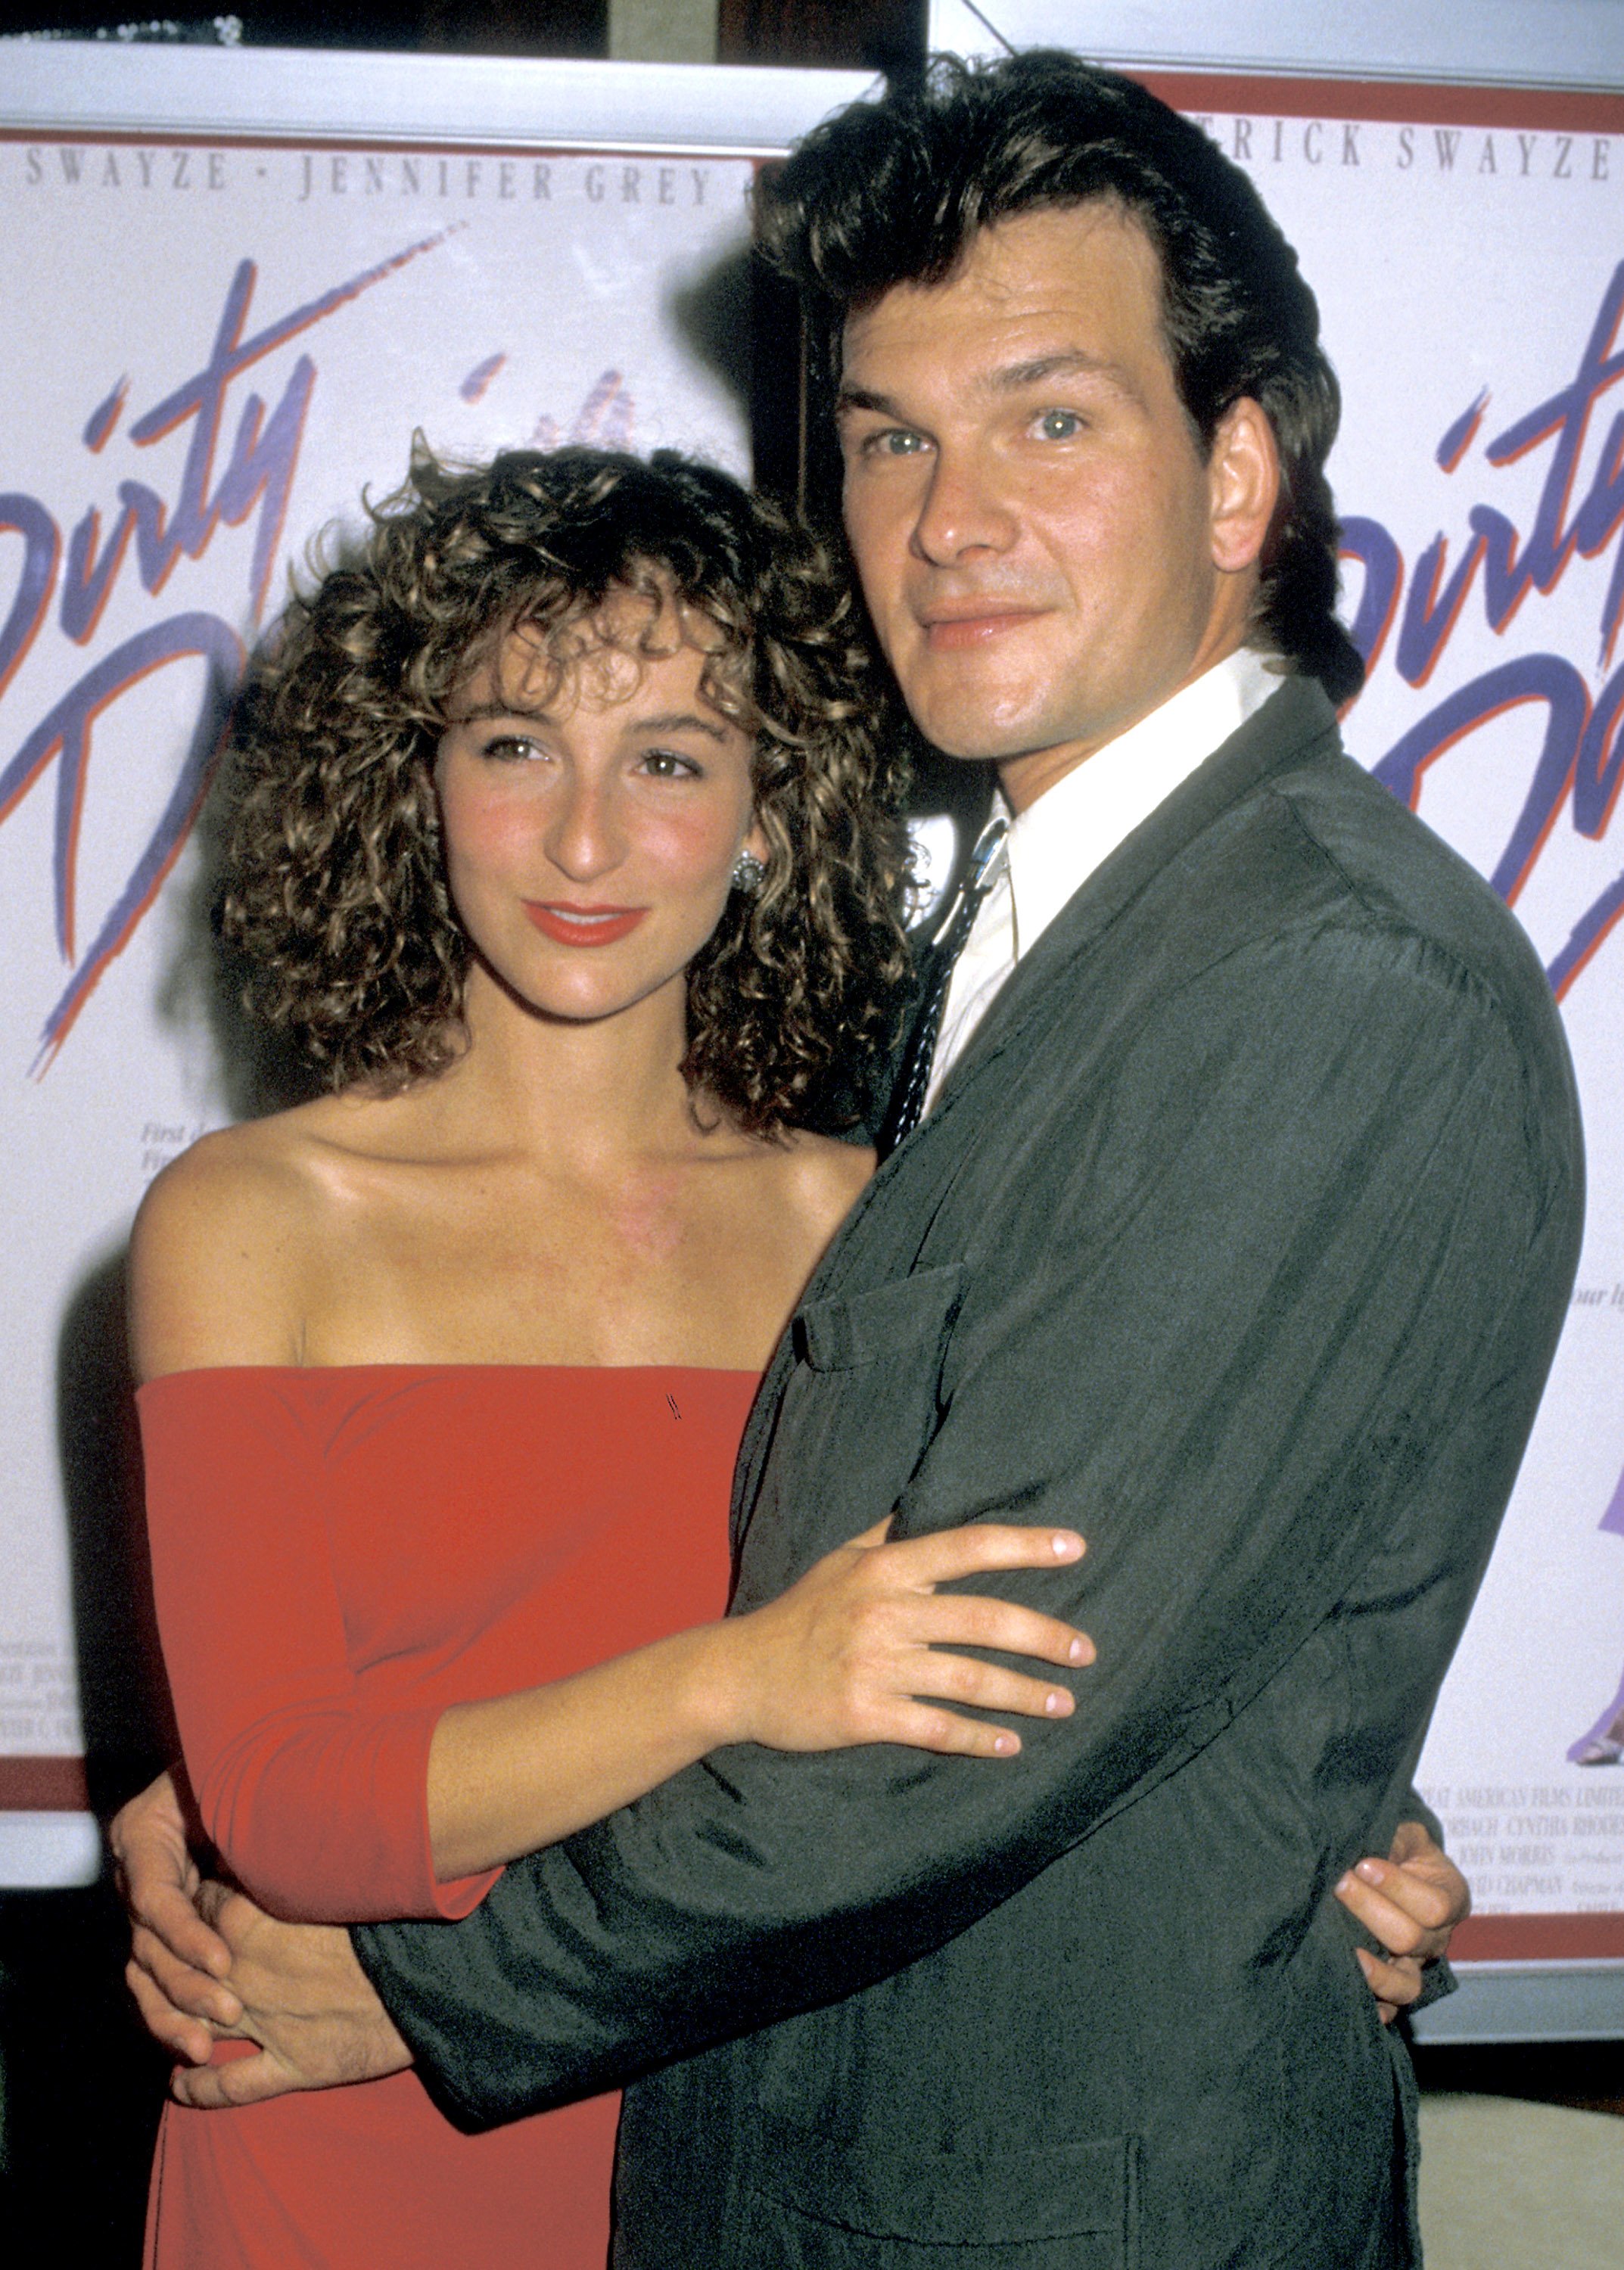 Jennifer Grey et Patrick Swayze lors de la première de "Dirty Dancing" au Gemini Theater le 17 août 1987 à New York. | Source : Getty Images